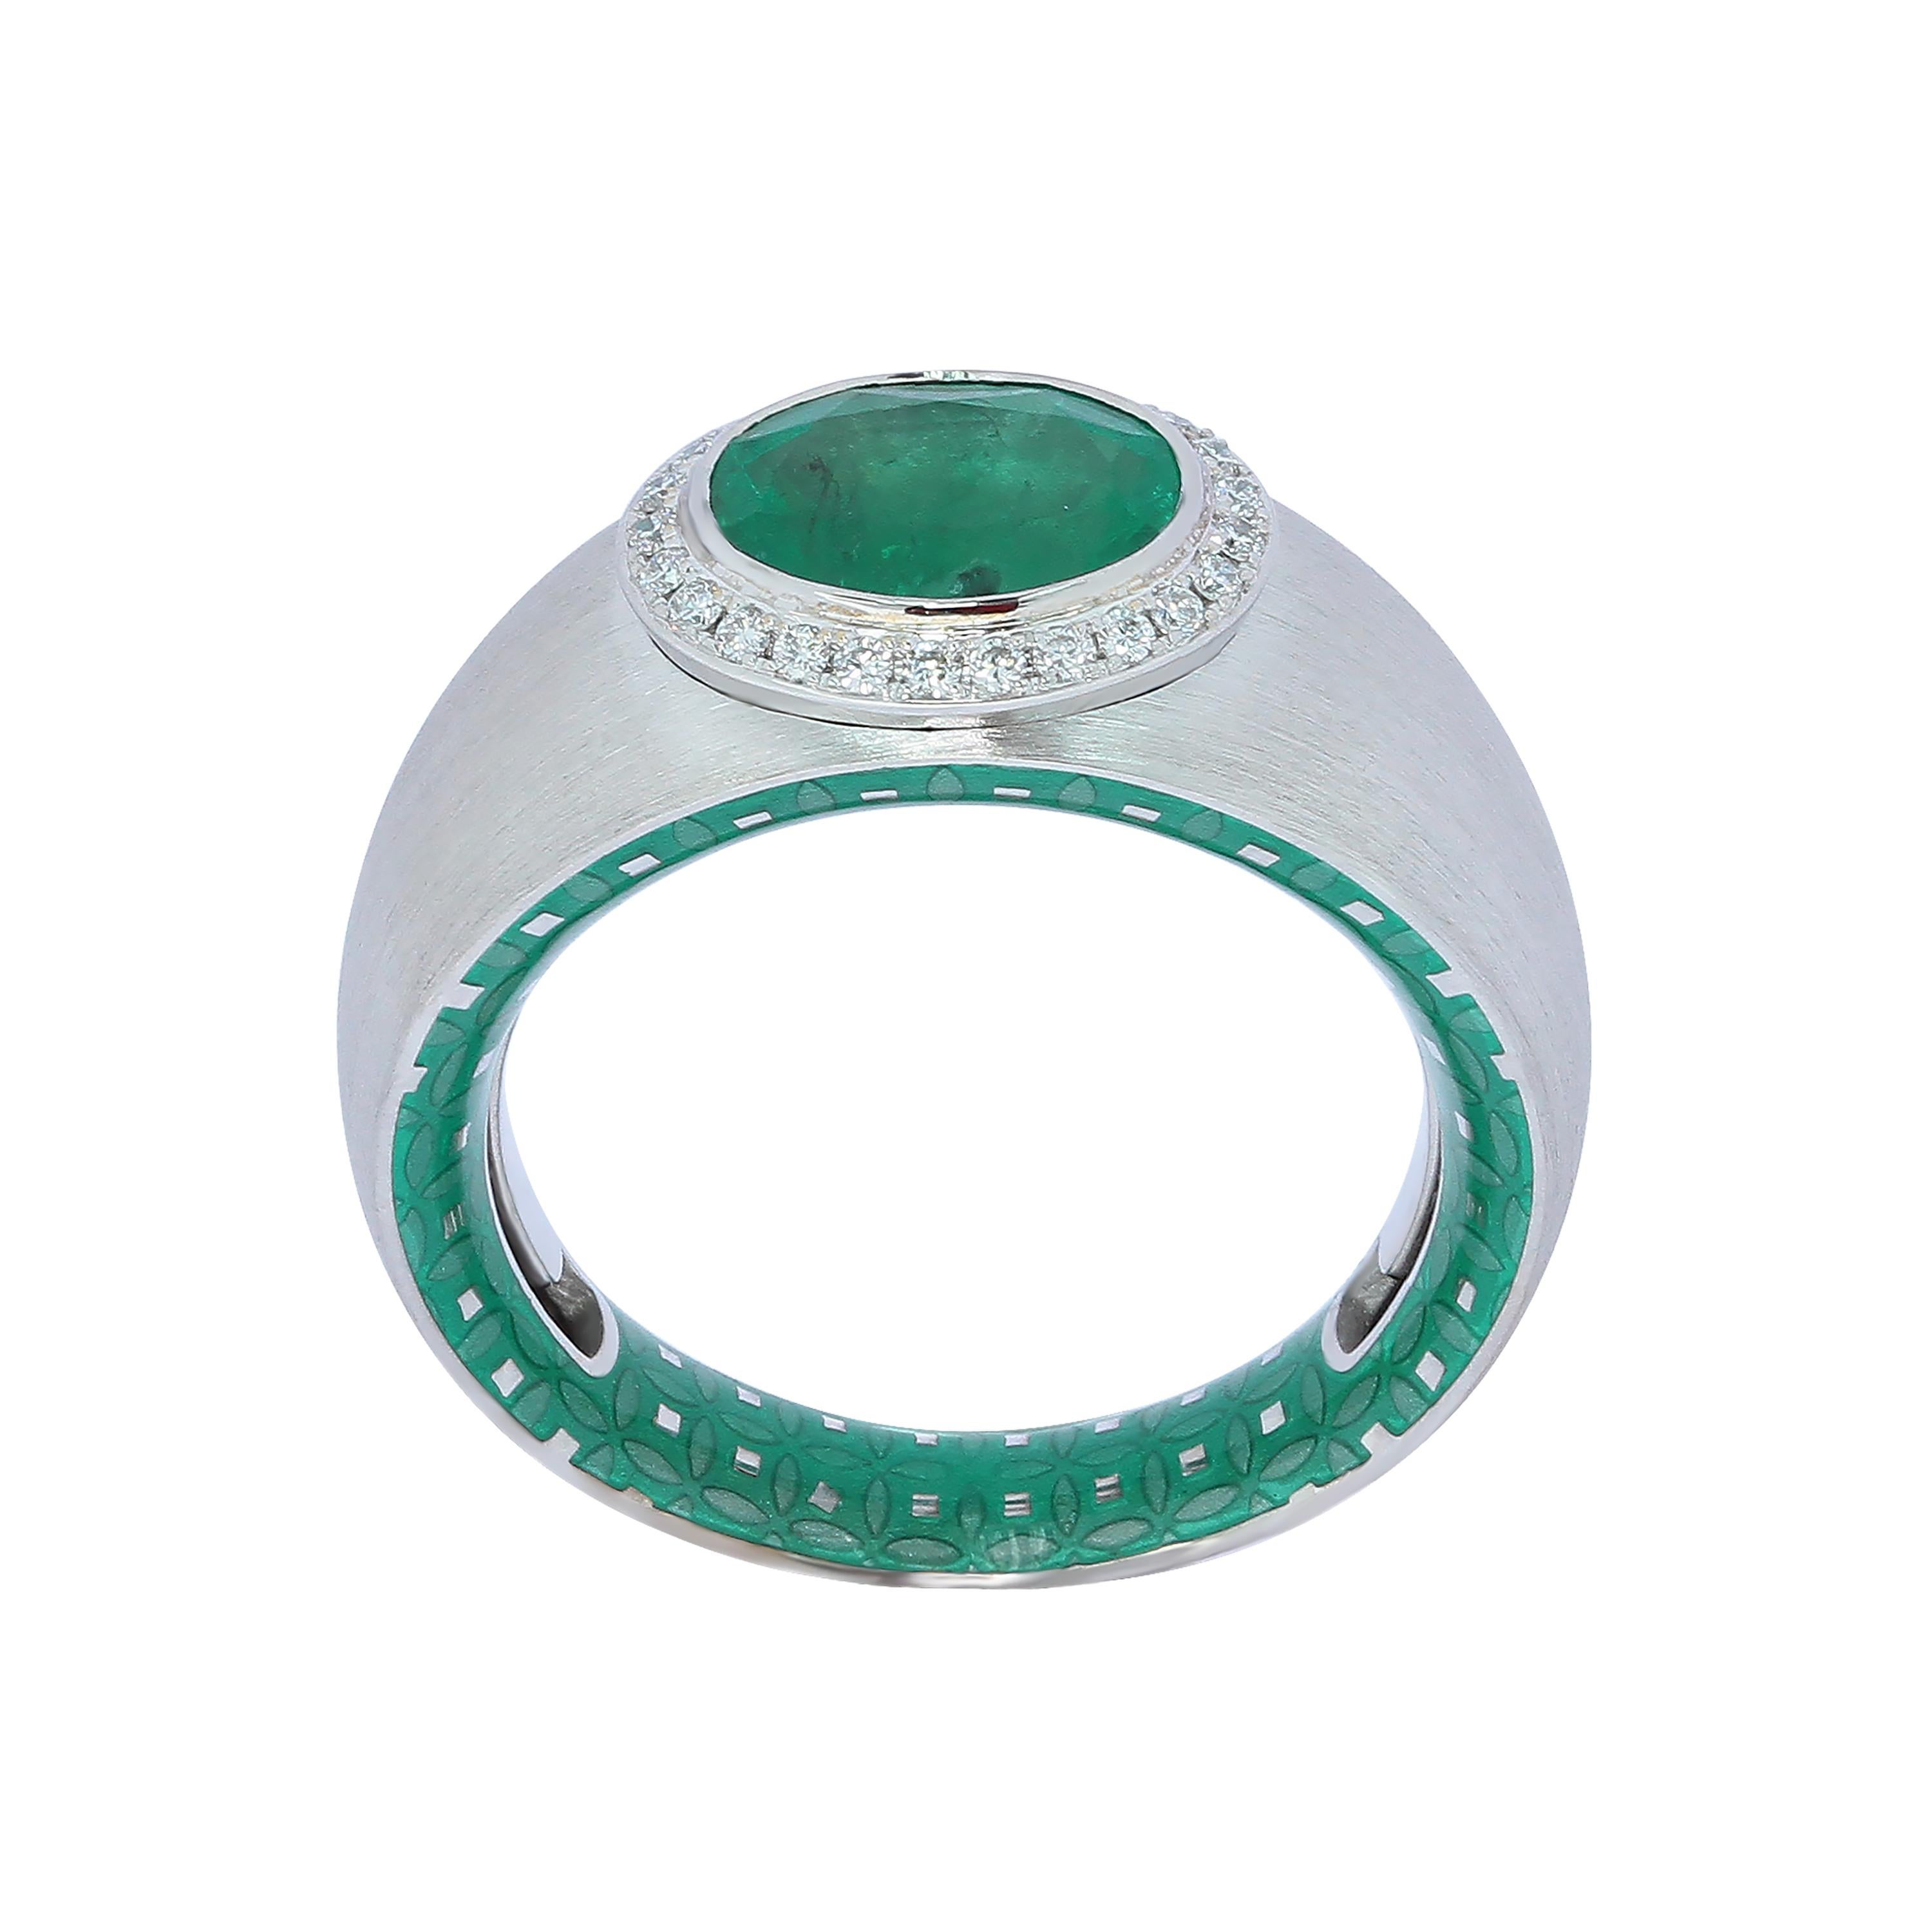 Smaragd 1,78 Karat Diamant-Emaille 18 Karat Weißgold Ring
Werfen Sie einen Blick auf eine unserer Markentexturen in der Kaleidoscope Collection - 